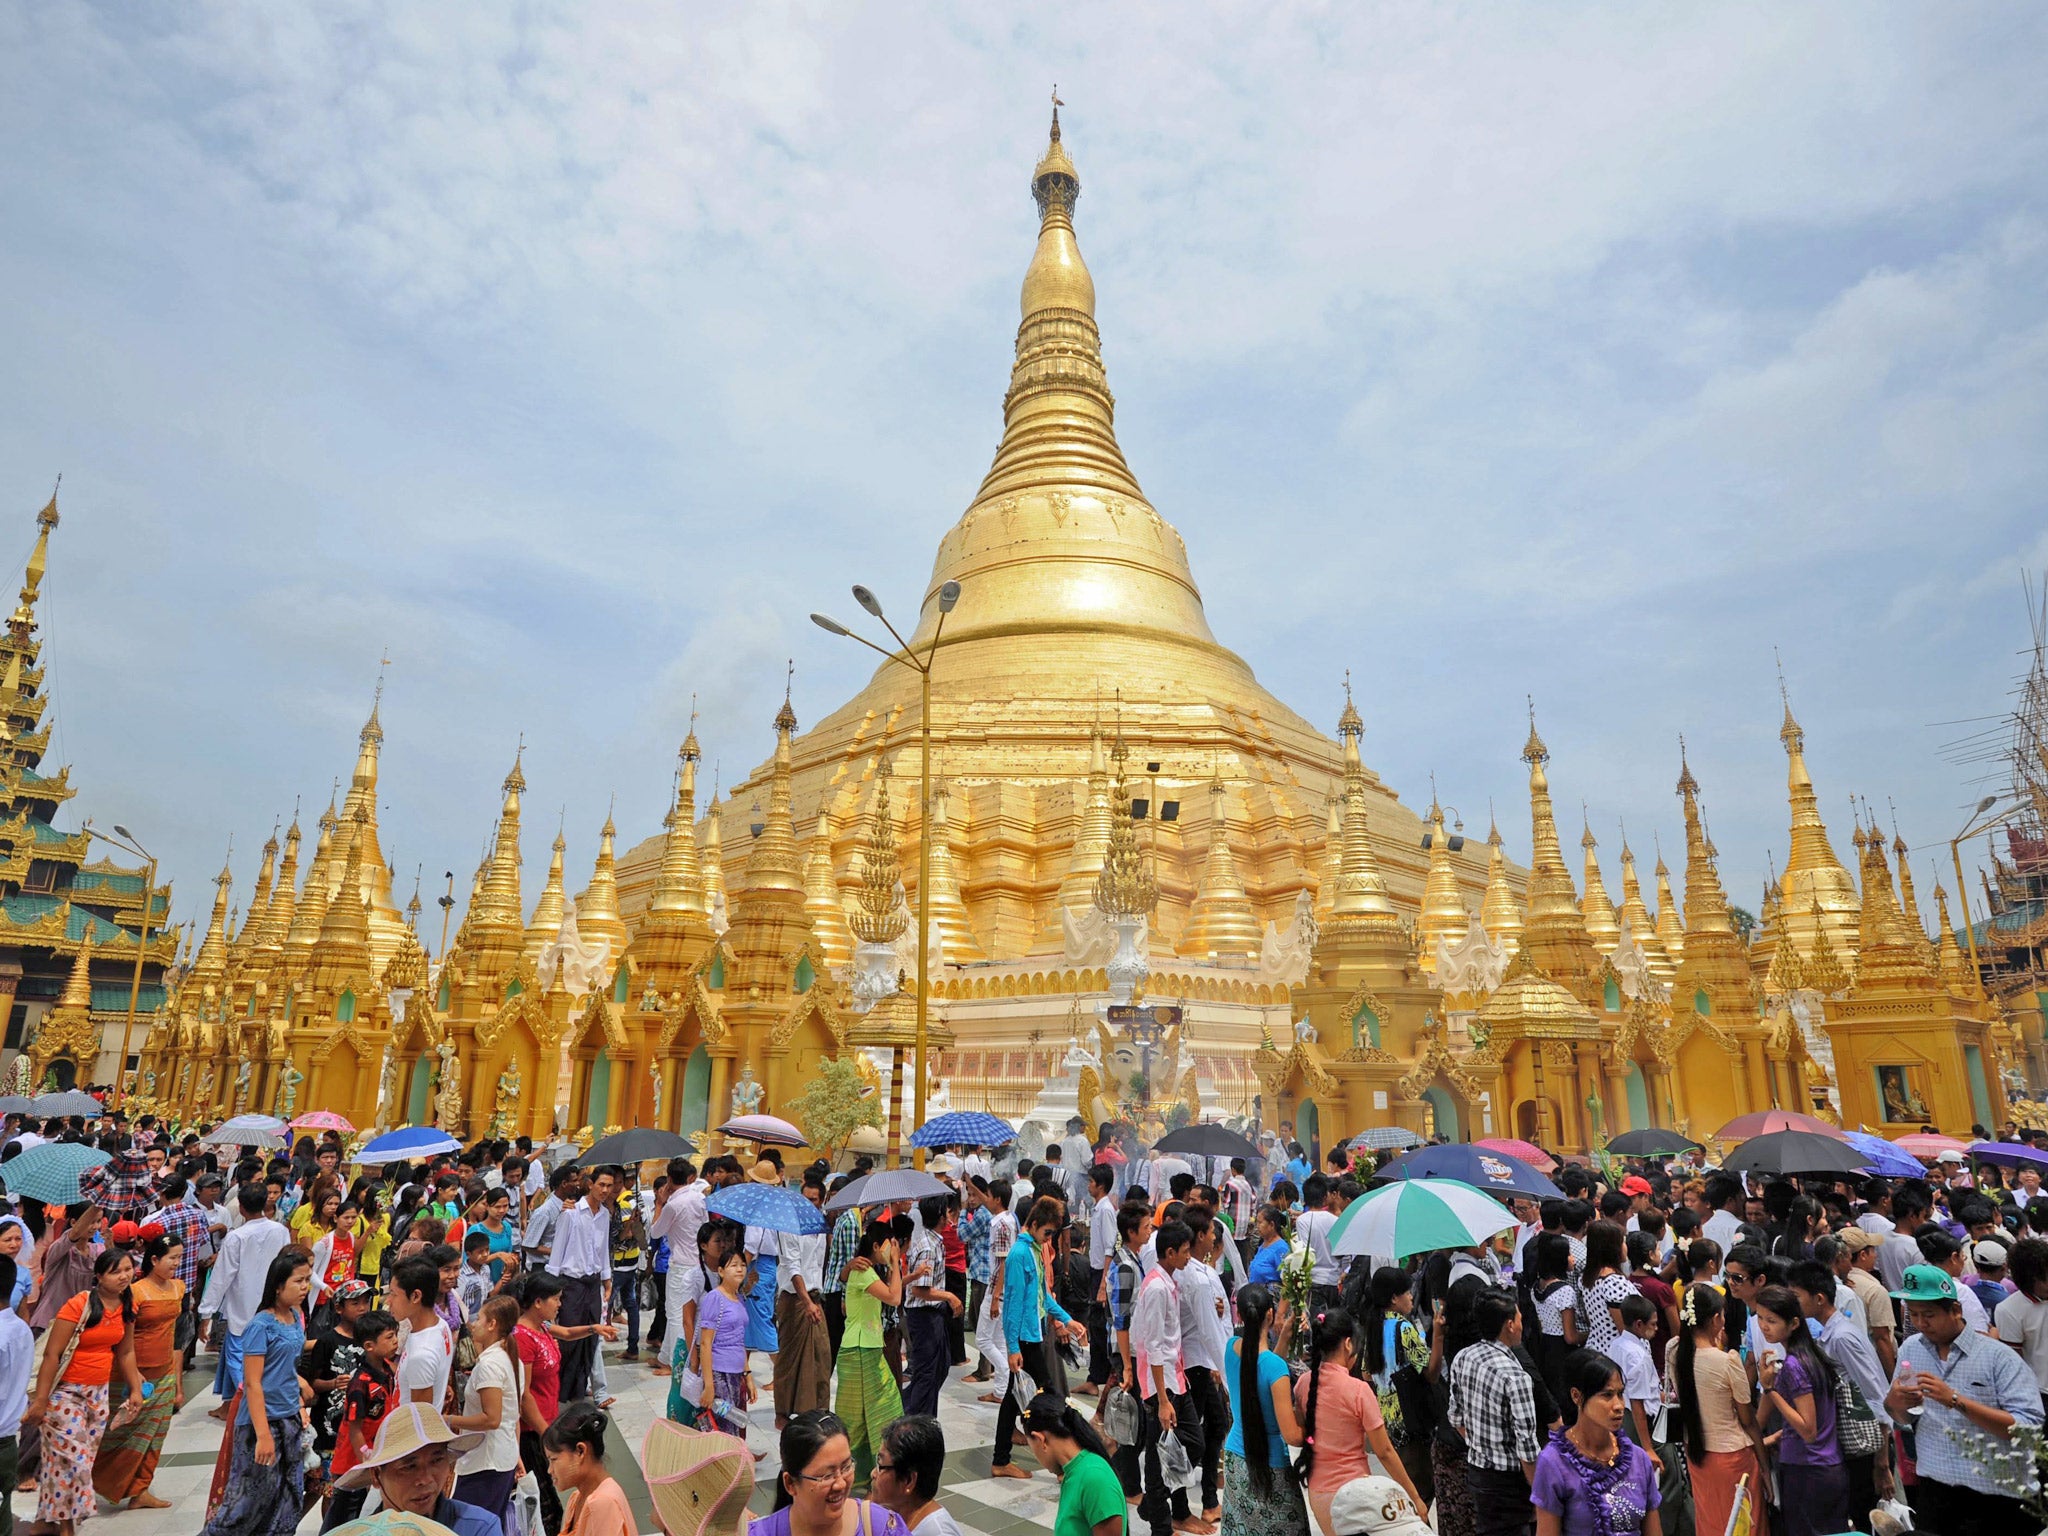 Shwedagon pagoda on the full moon day in Rangoon